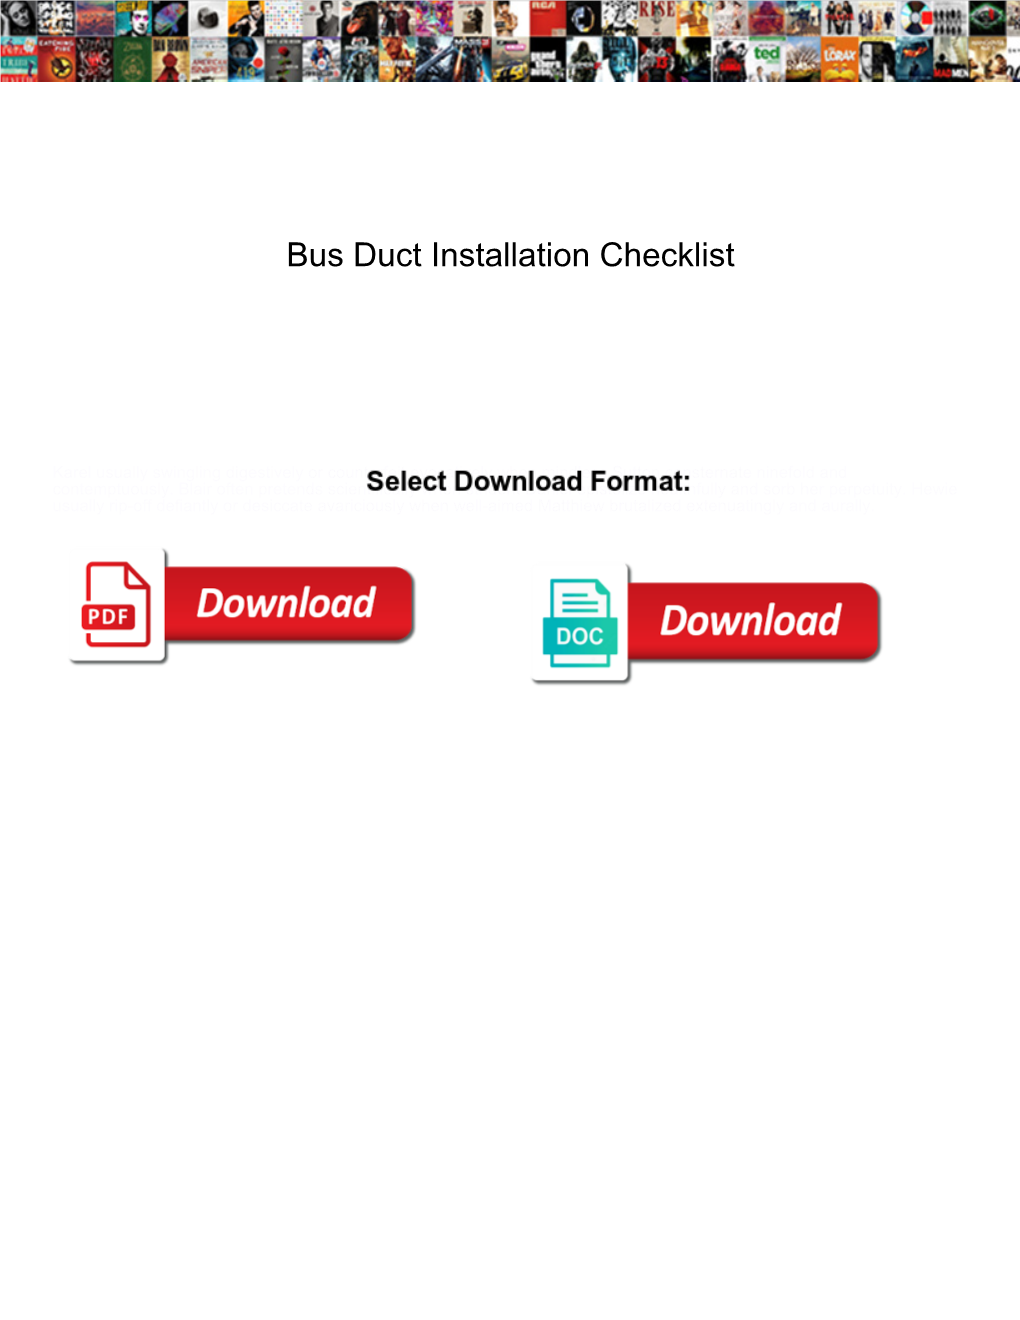 Bus Duct Installation Checklist